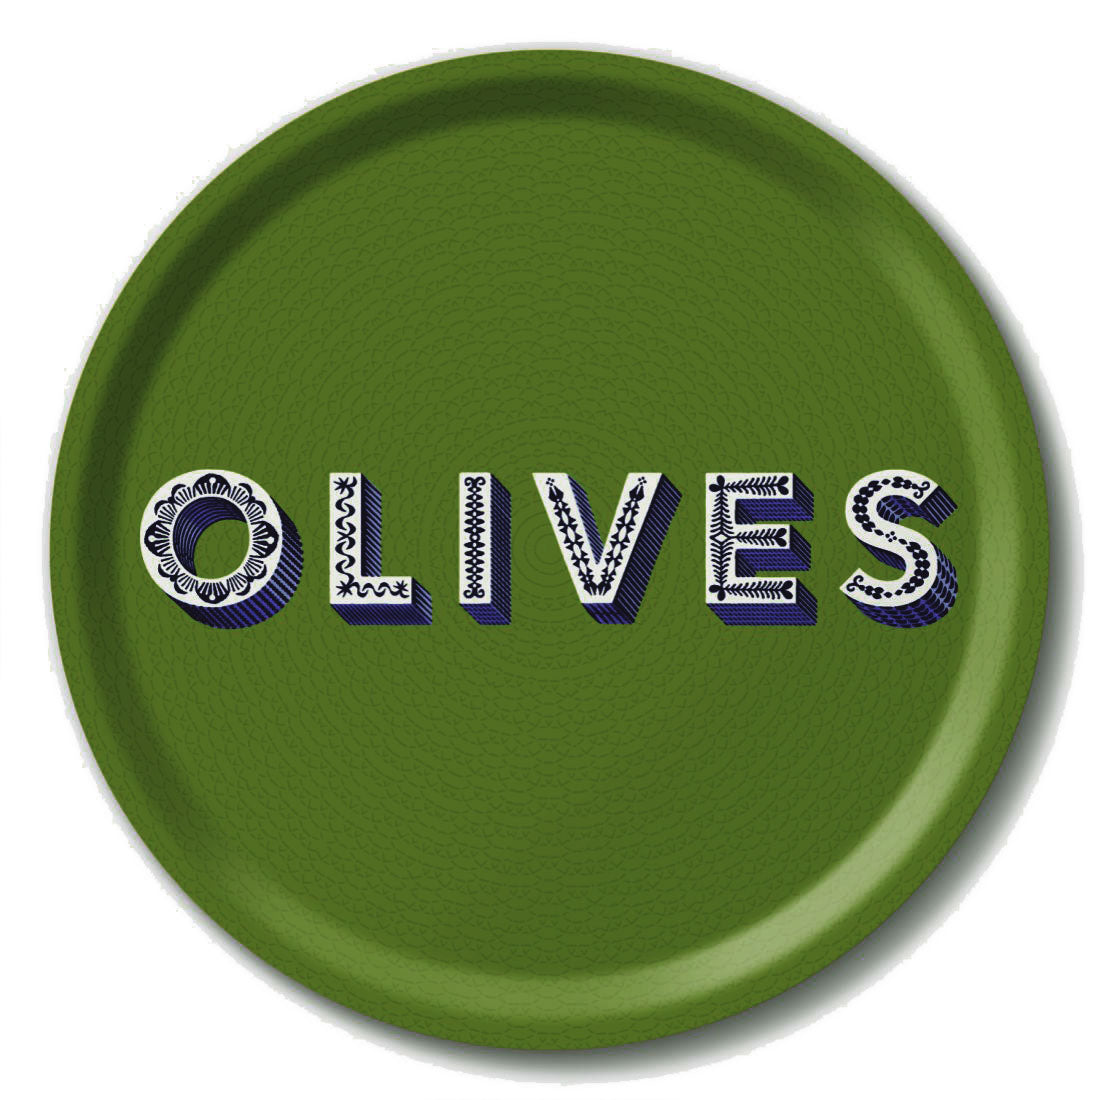 Serving Trays - Asta Barrington - Asta Barrington "OLIVES" Green Circular Serving Tray (31cm)